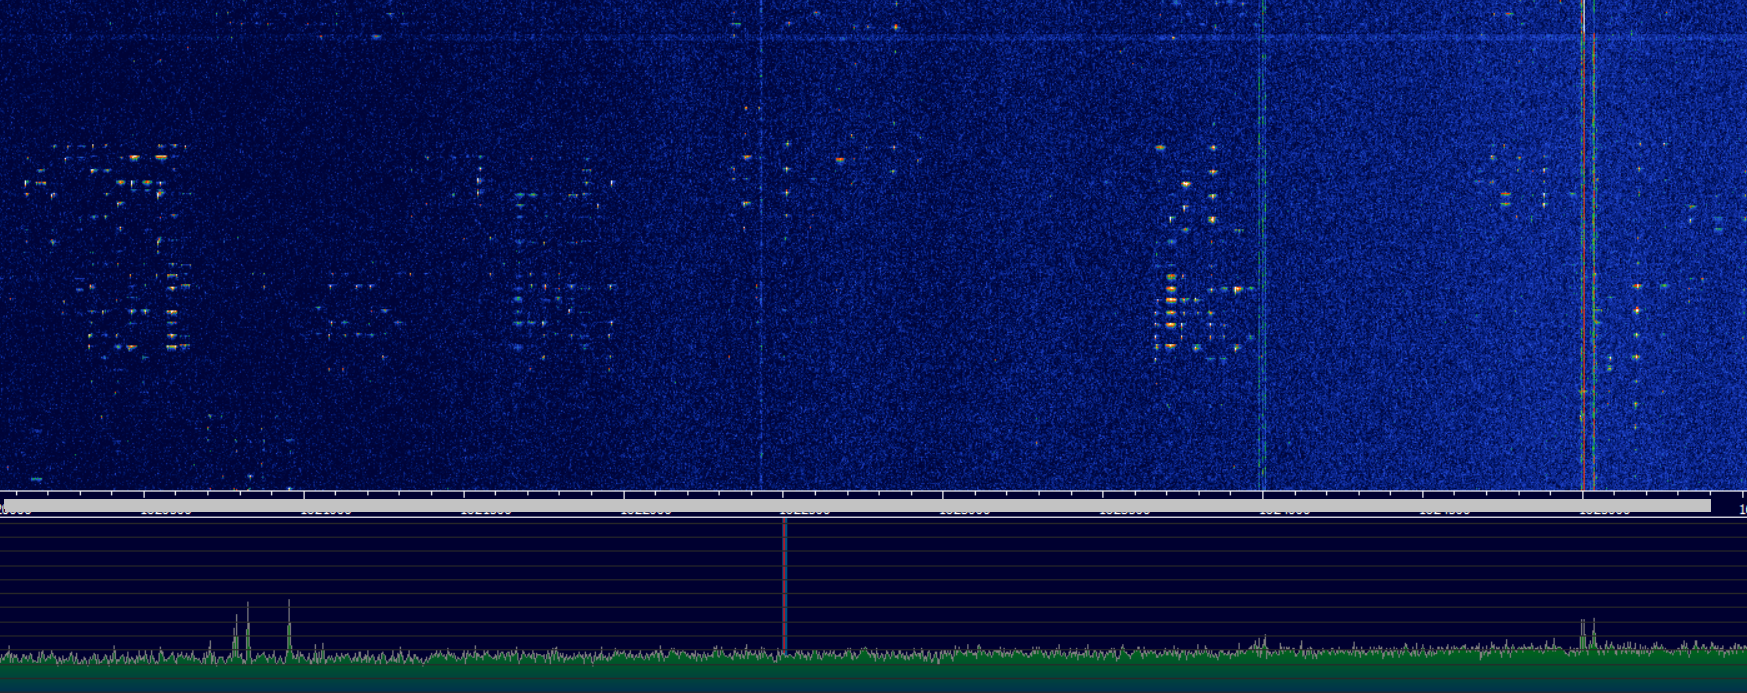 Iridium: принимаем и декодируем сигналы группировки спутников у себя дома - 3